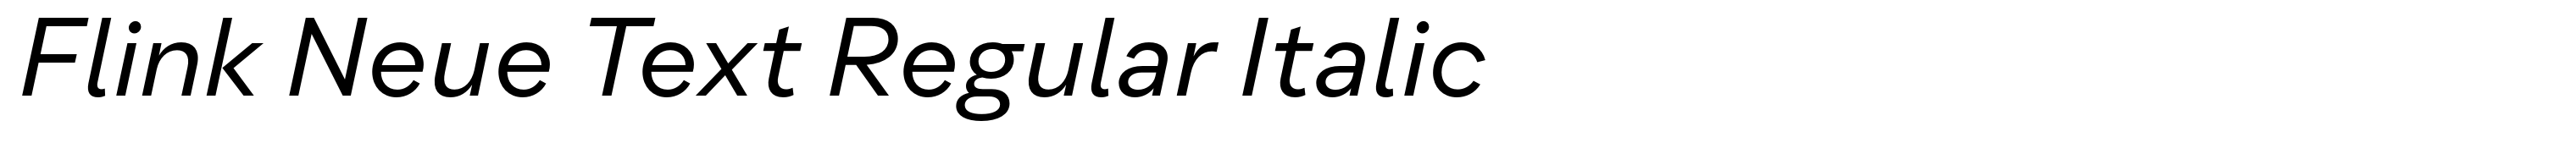 Flink Neue Text Regular Italic